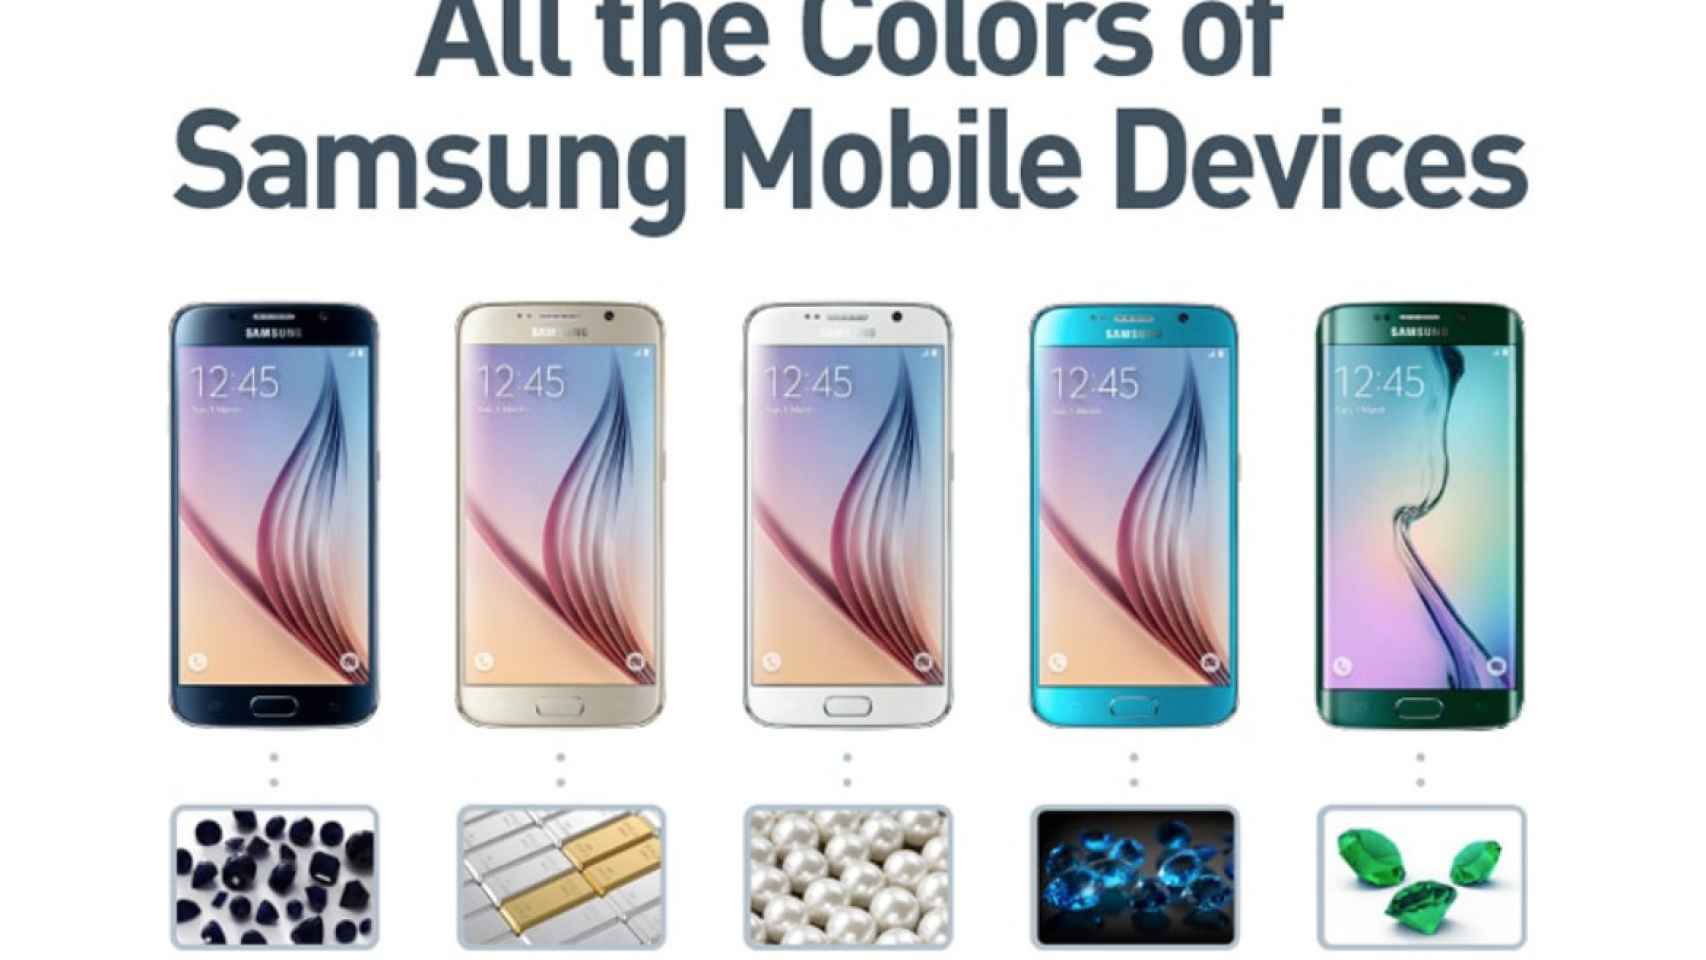 ¿Cuántos colores distintos tiene Samsung en sus móviles?